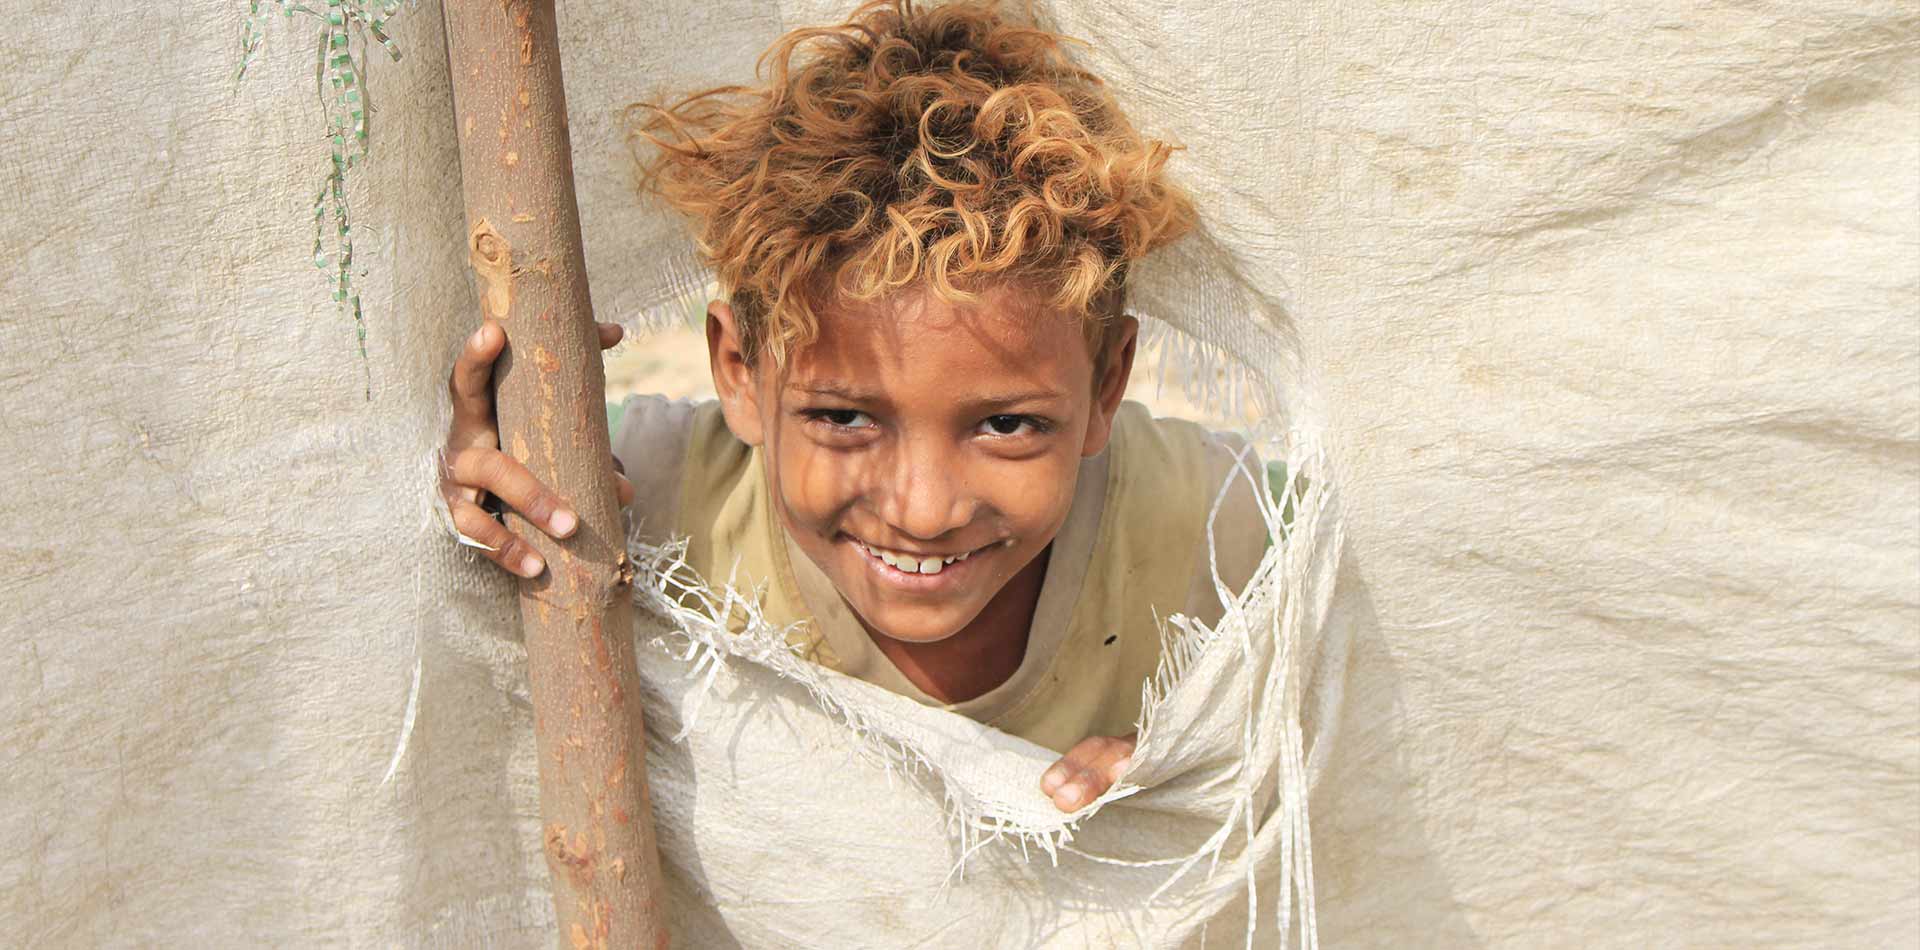 طفل يمني نازح يبتسم من خيمة ممزقة